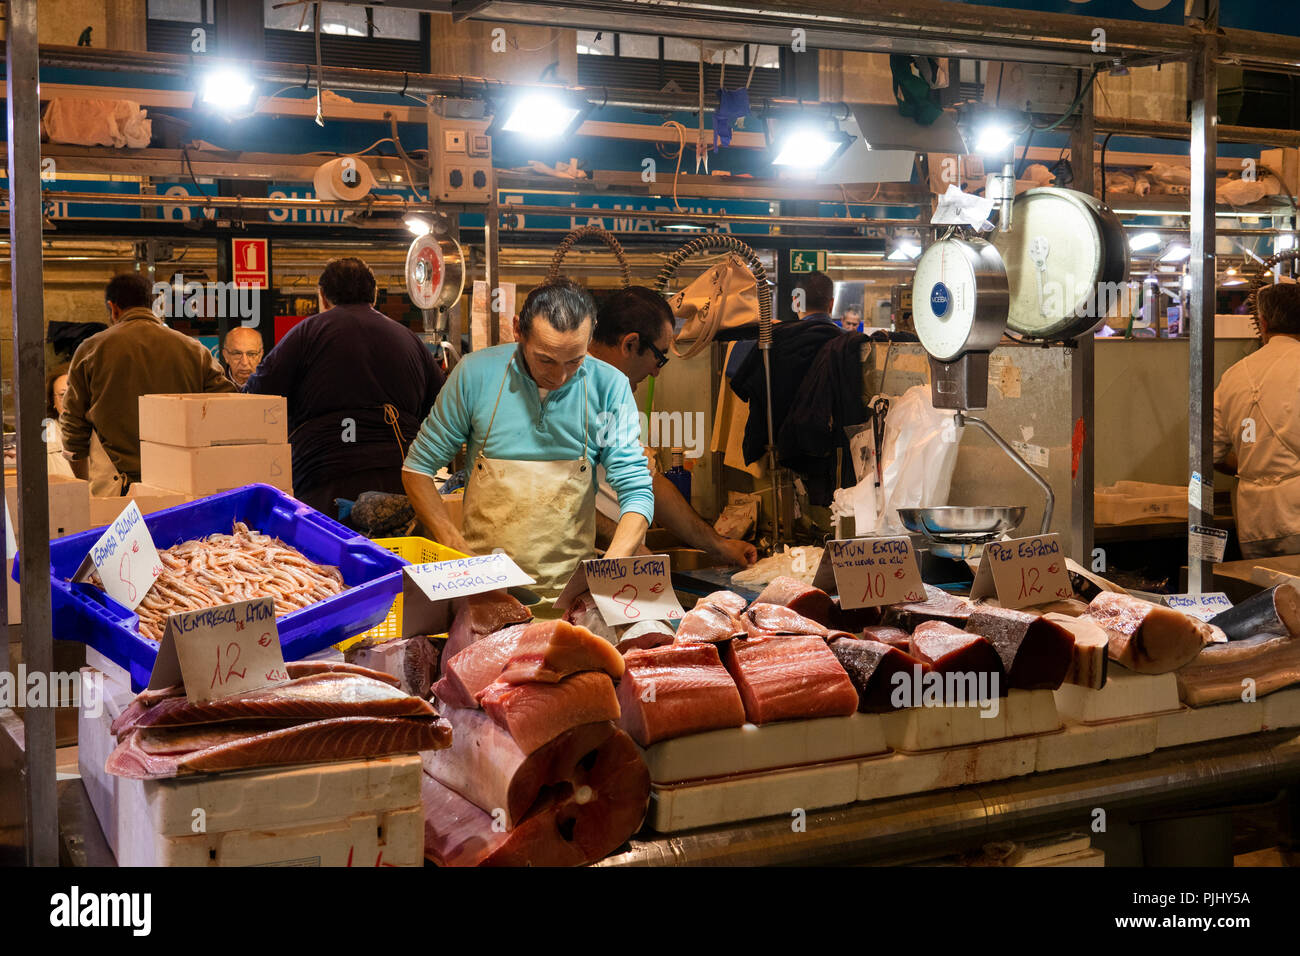 La Spagna, a Jerez de la Frontera, Plaza de Abastos, Mercado Central, centrale mercato del pesce, stallholder il taglio di filetti di tonno Foto Stock